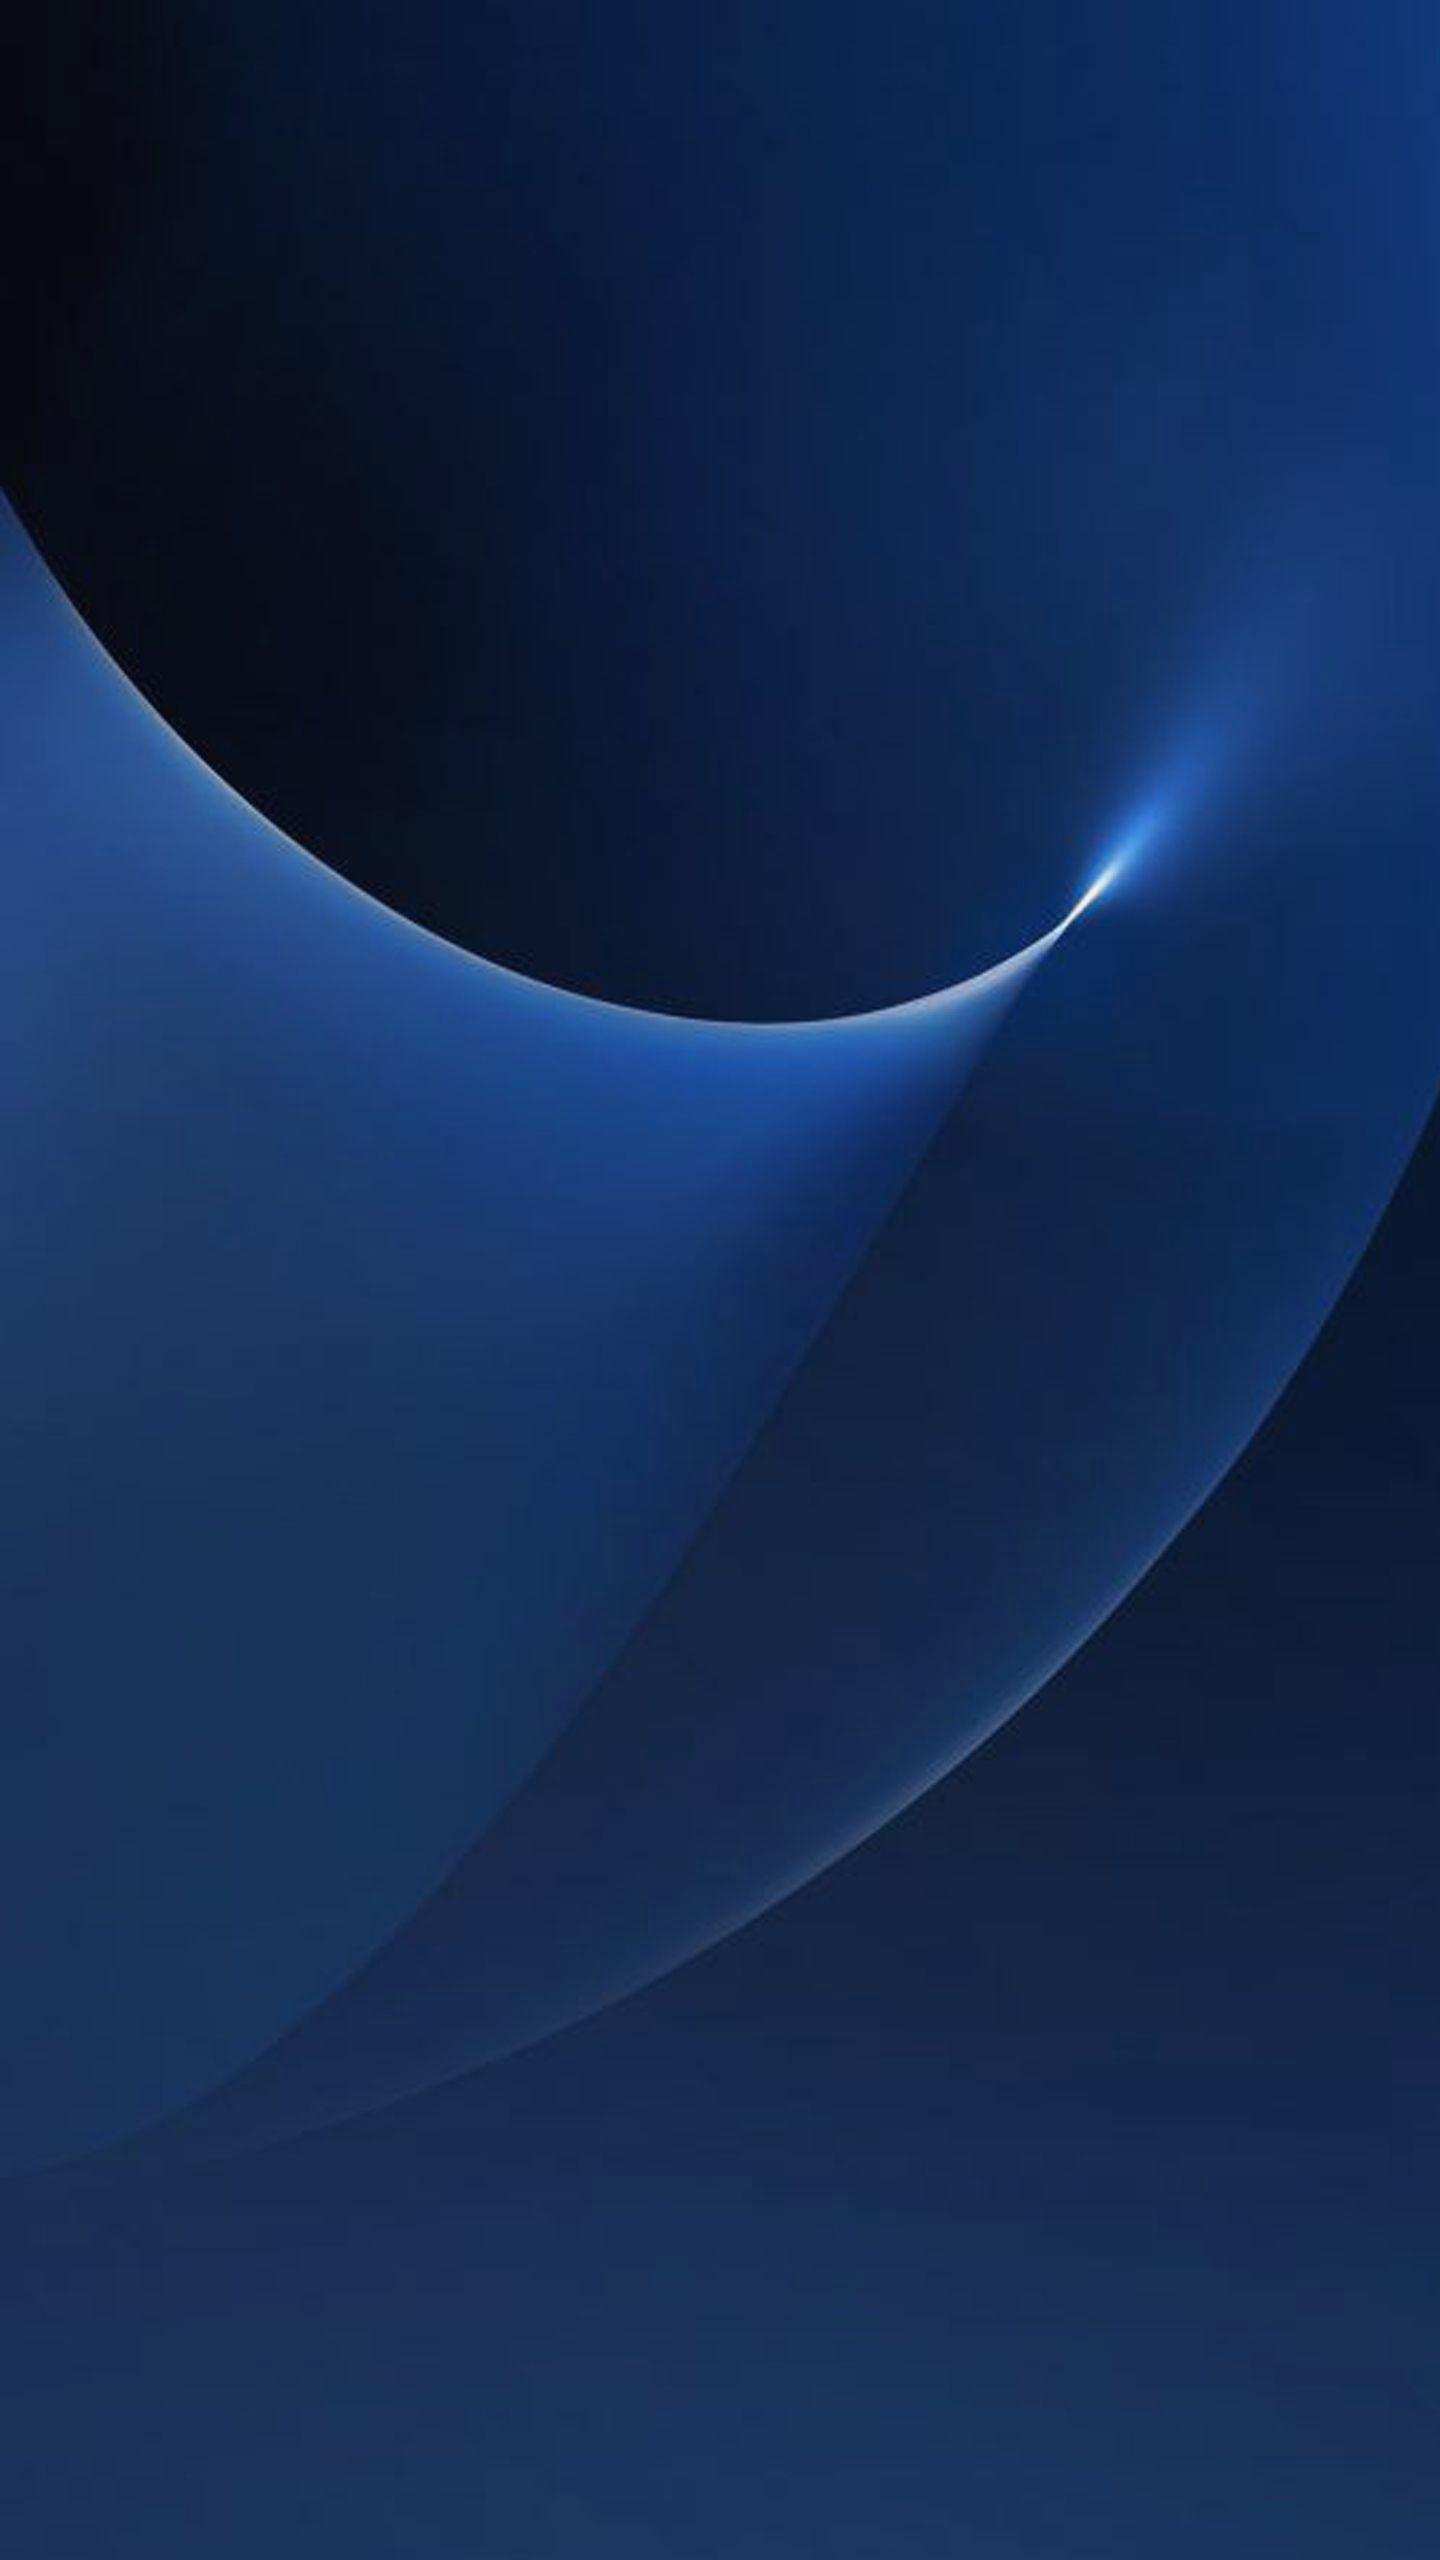 1440x2560 Curve Lights 06 cho hình nền Samsung Galaxy S7 và Edge